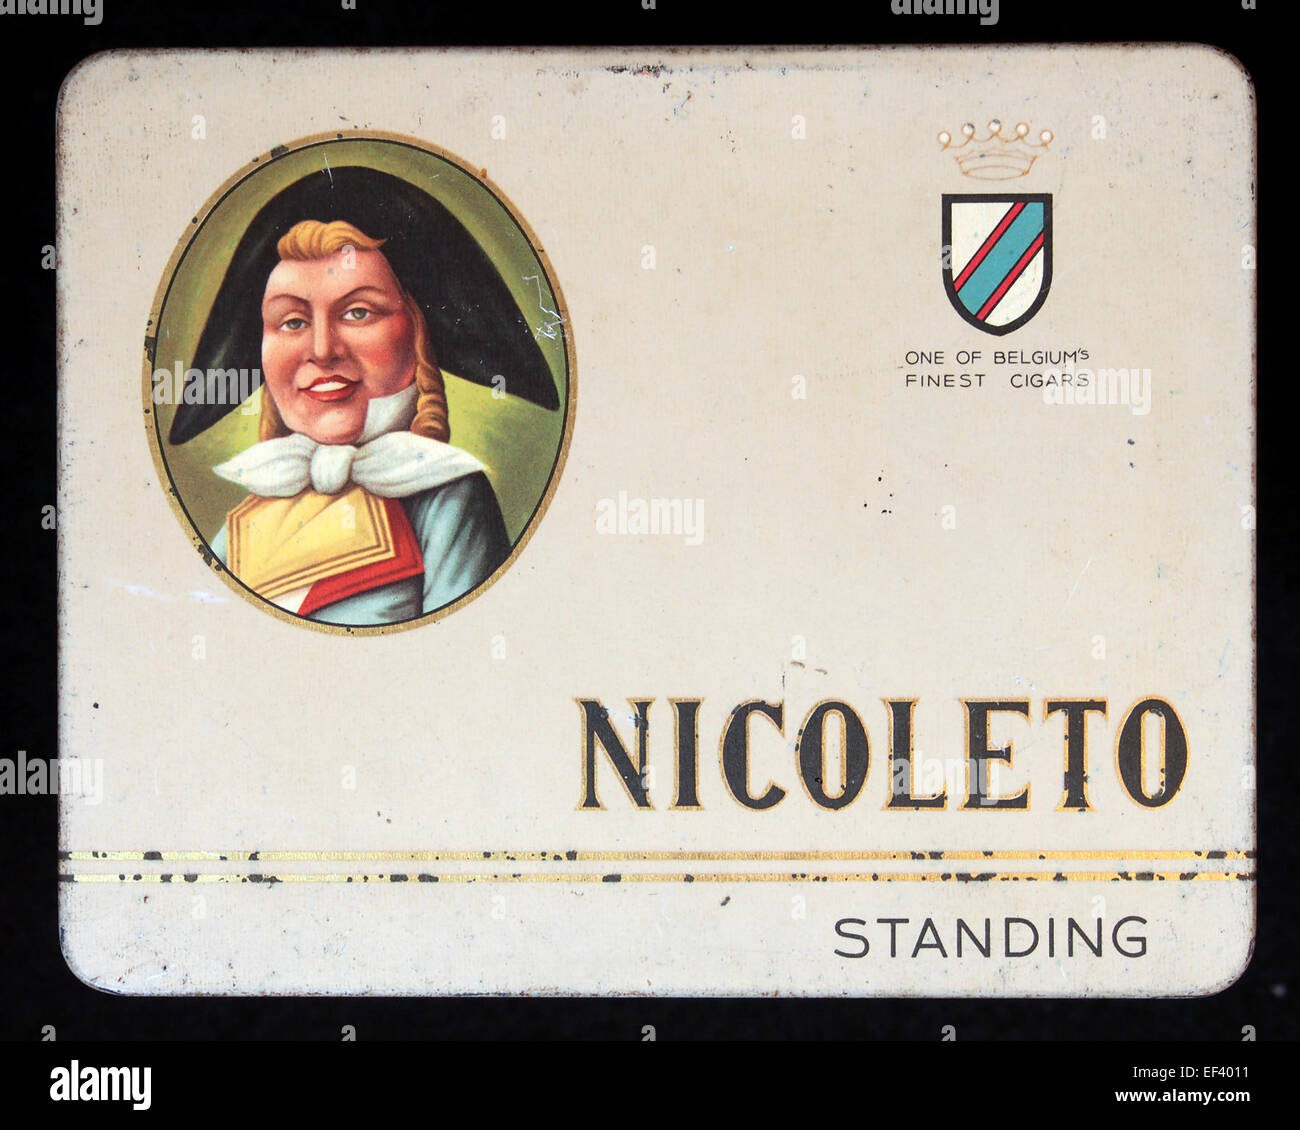 Nicoleto sigarenblikje permanente Foto Stock